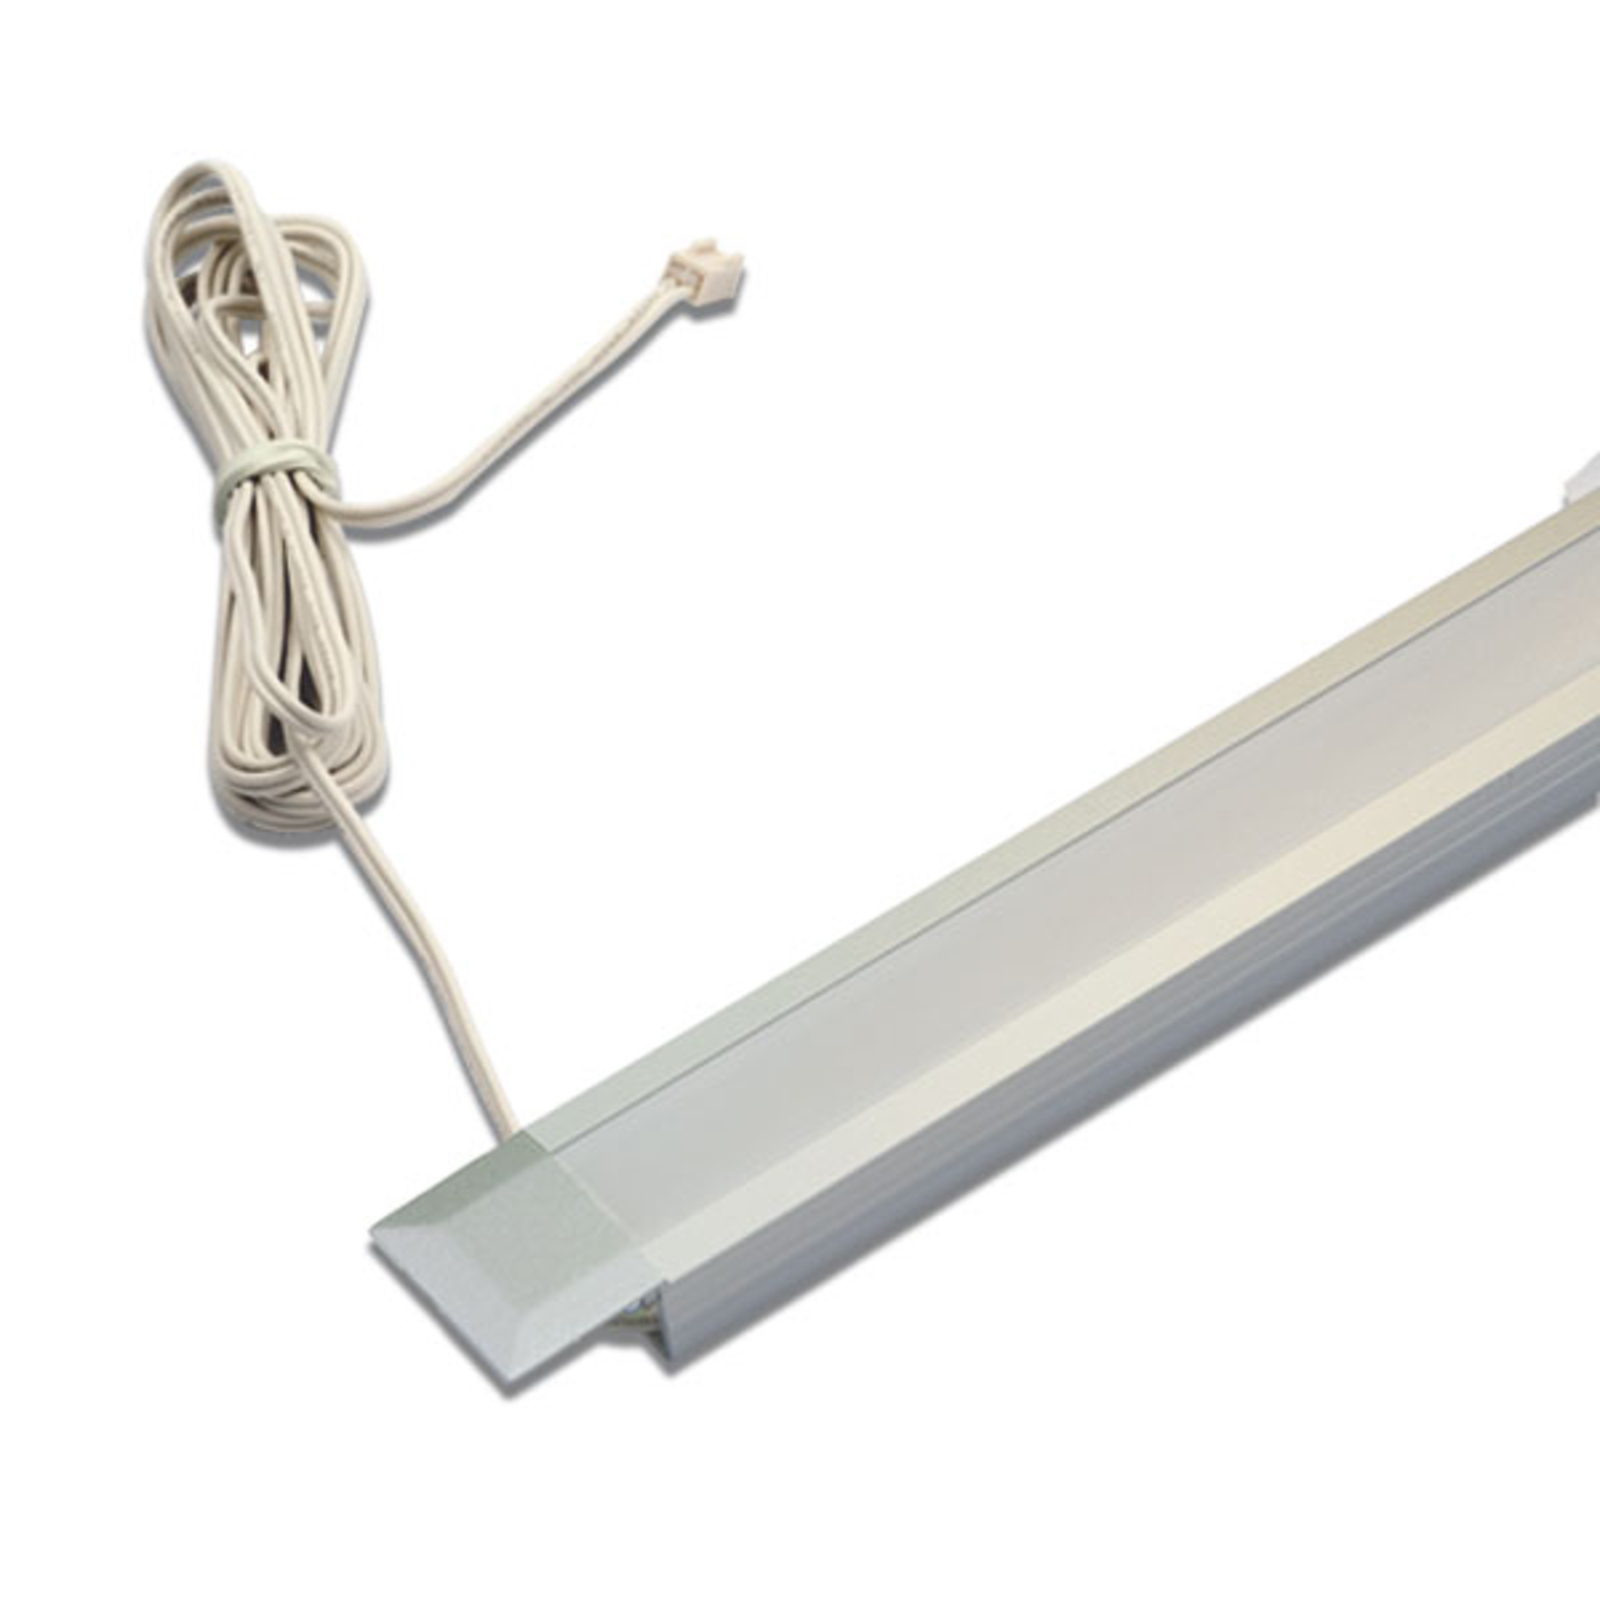 IN-Stick SF slank LED-indbygningslampe - 53cm lang